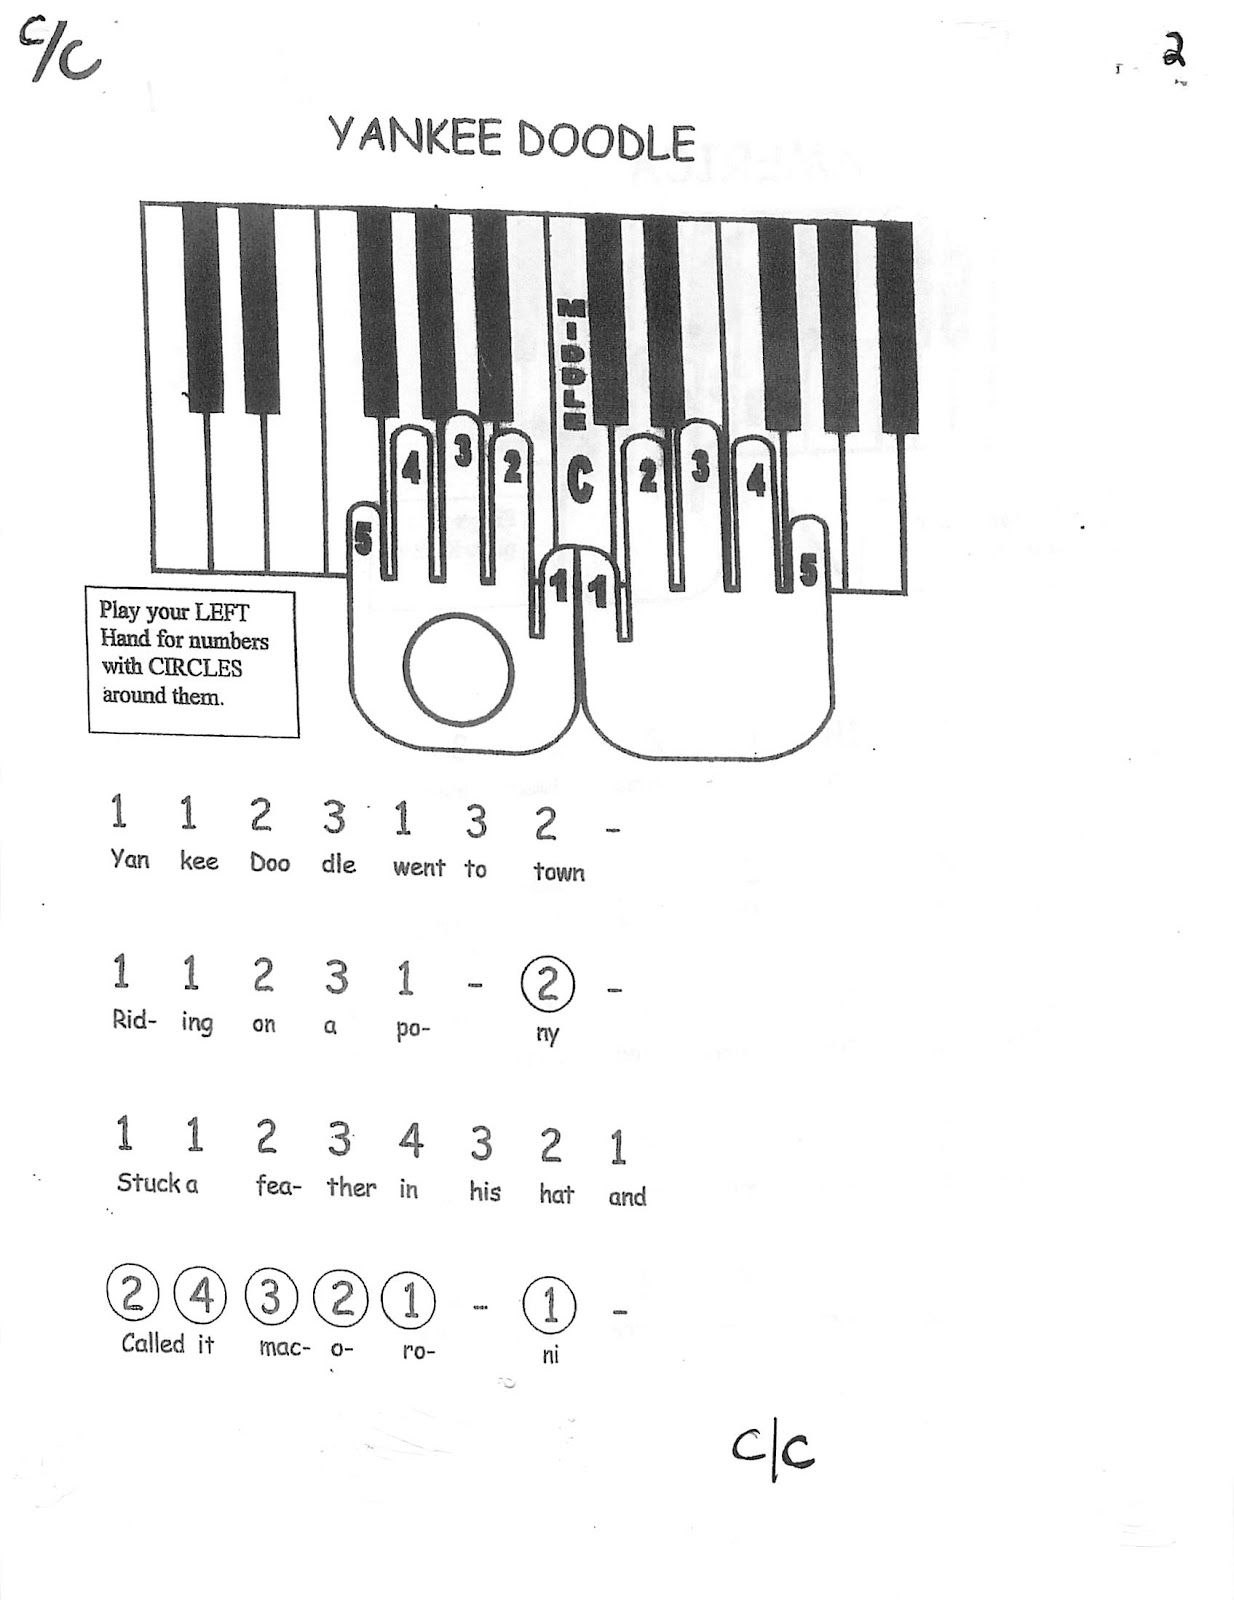 Простая игра на пианино по клавишам. Схема клавиш синтезатора по цифрам.